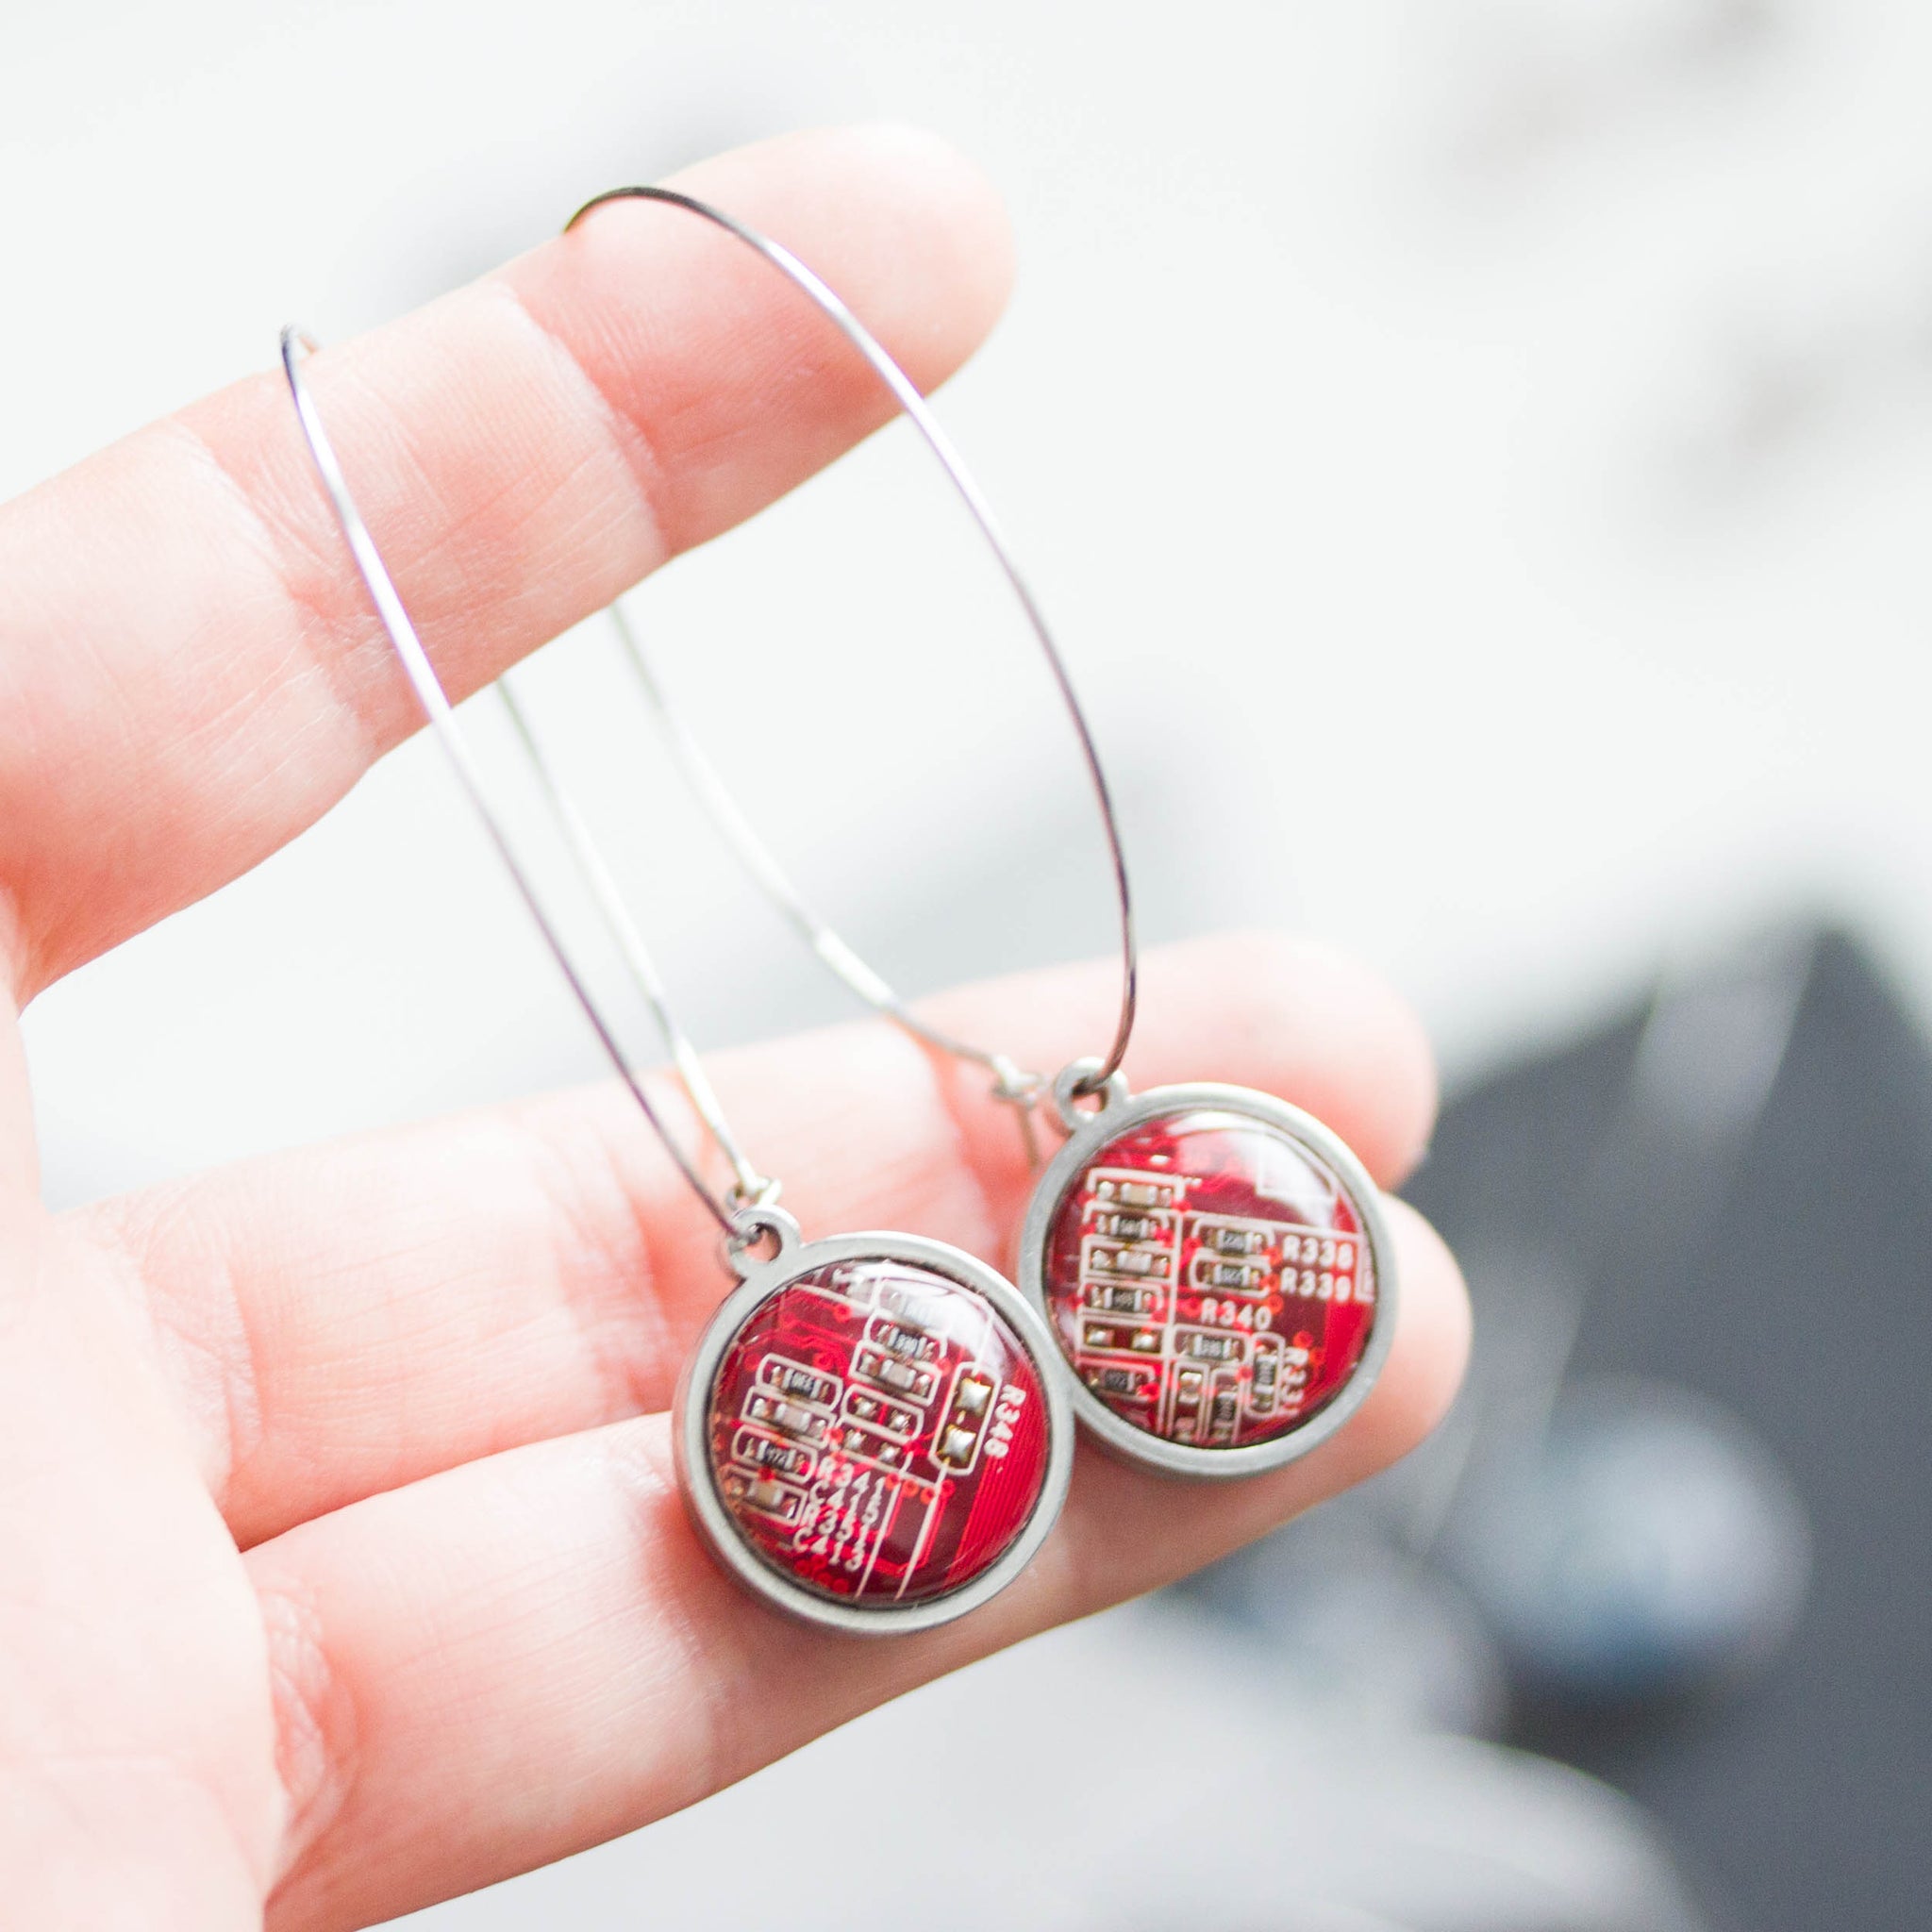 Hoop earrings with 15mm round circuit board pendants, stainless steel